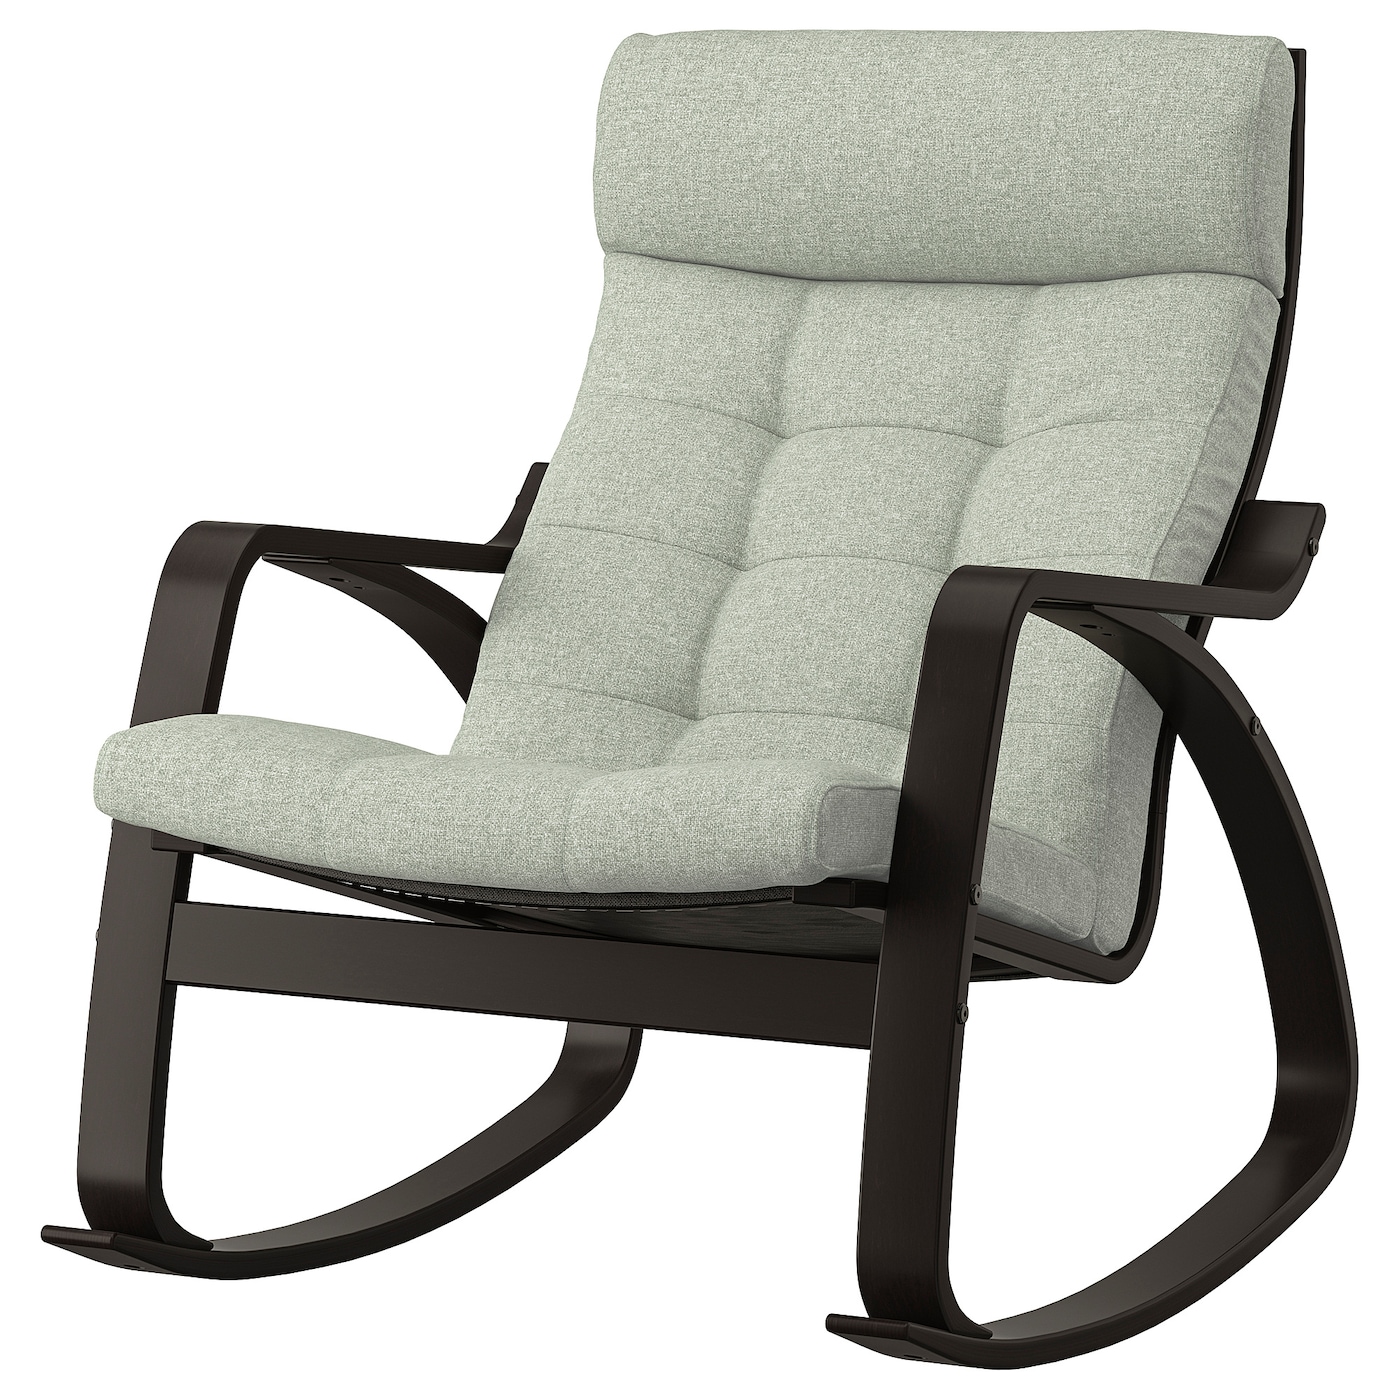 ПОЭНГ Кресло-качалка, черно-коричневый/Гуннаред светло-зеленый POÄNG IKEA детское кресло качалка lazychild детское кресло качалка умное кресло качалка с bluetooth левая и правая новая увеличенная подвесная корзина